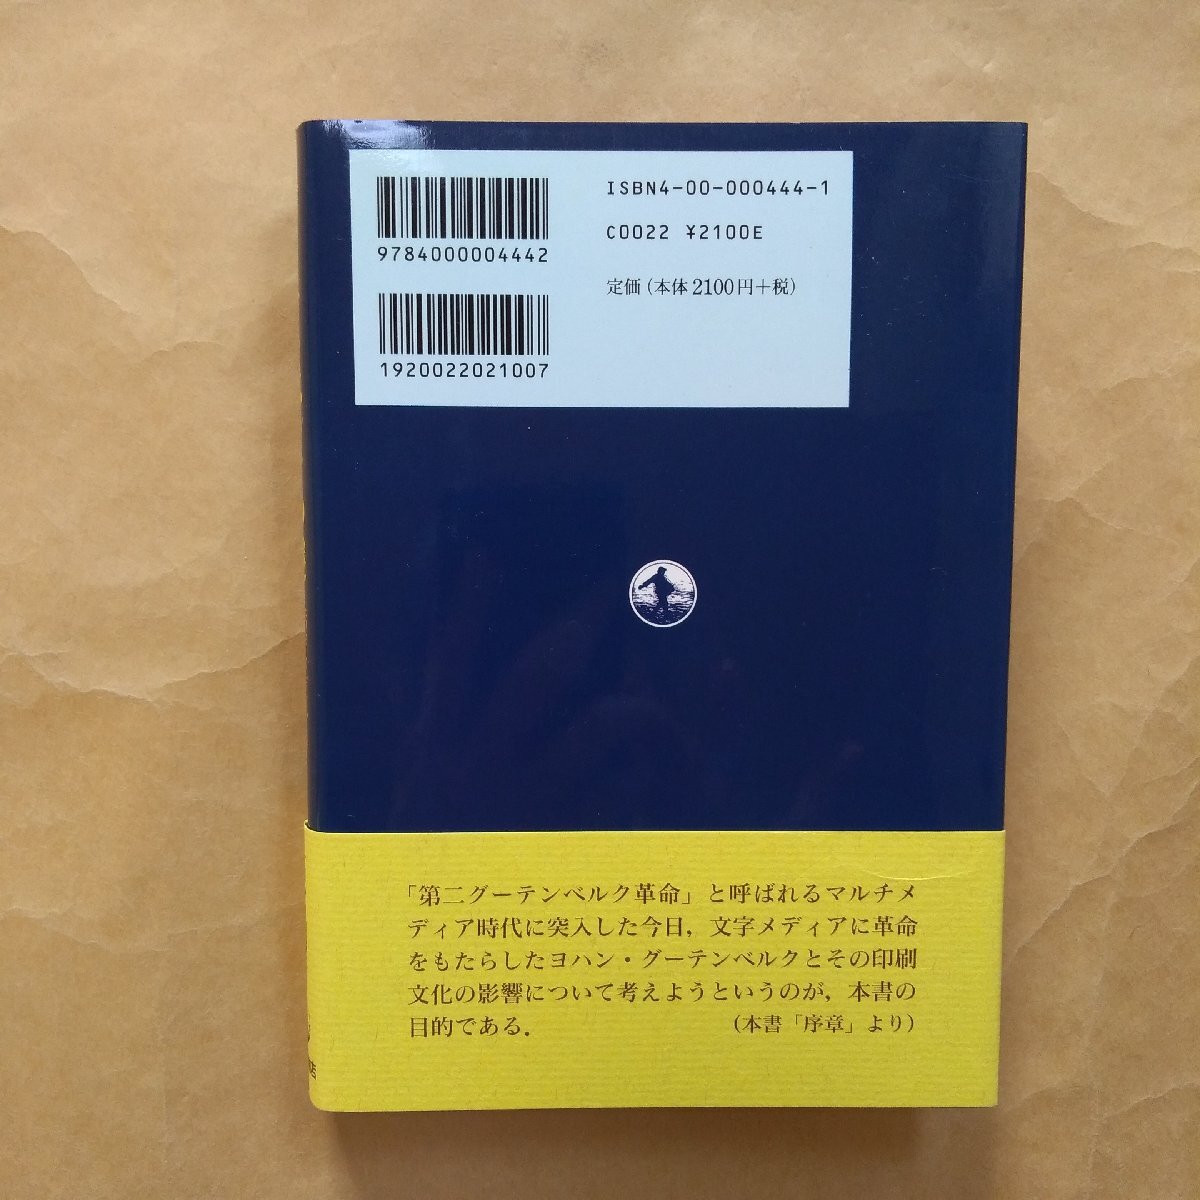 *g- тонн bell k. загадка . знак носитель информации. рождение . после этого высота . выгода line Iwanami книжный магазин обычная цена 2310 иен 1998 год первая версия 